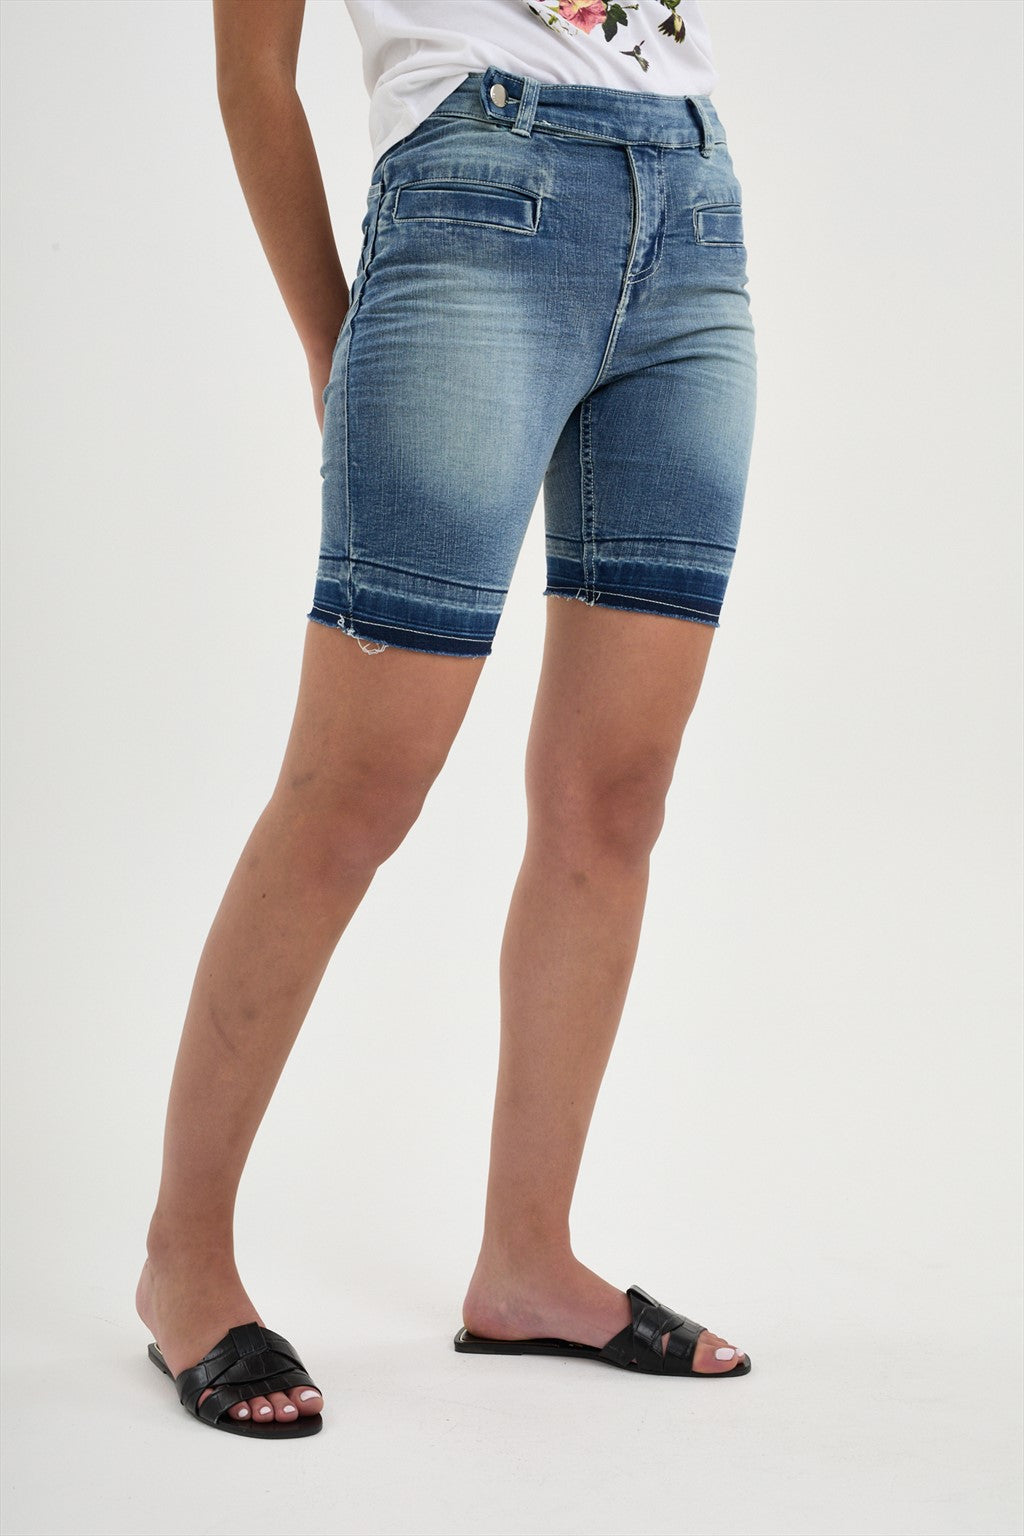 Blue Mix Alina Crop Denim Shorts/Capri Pants